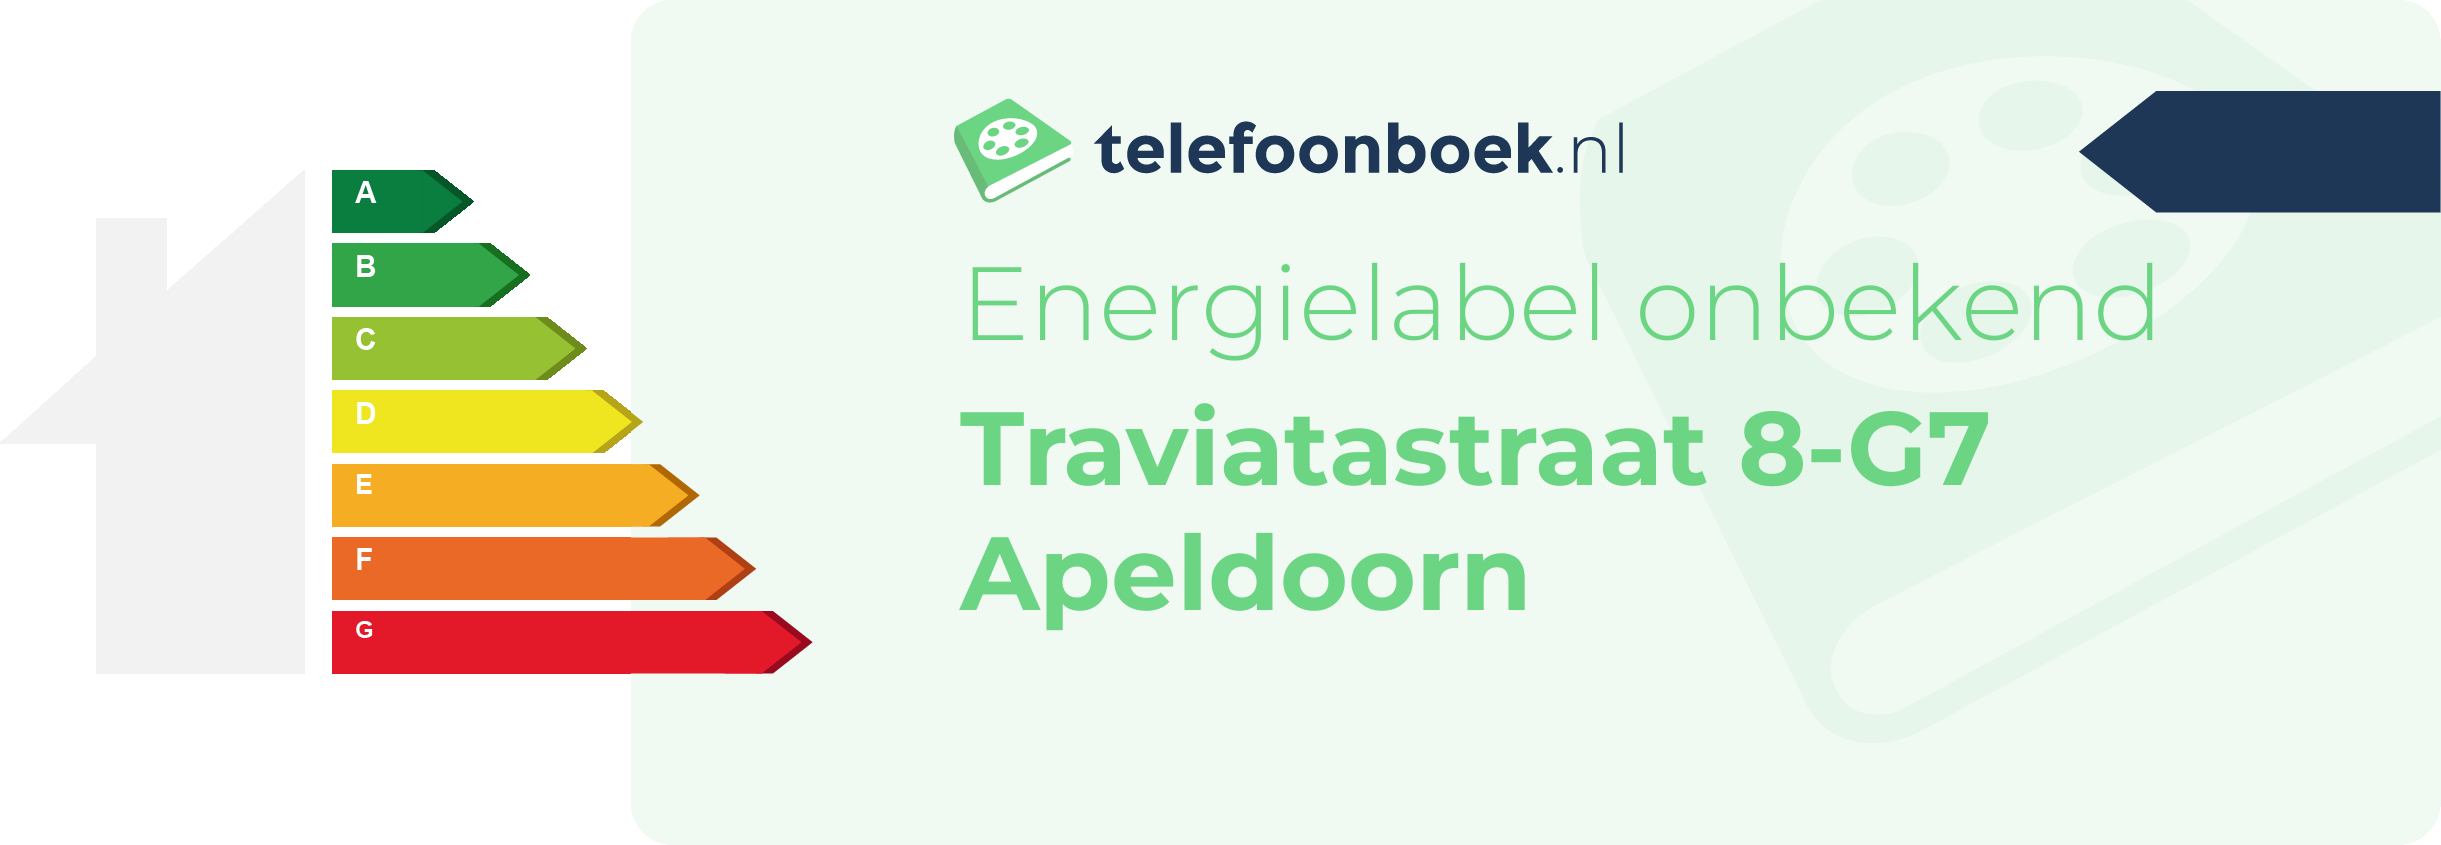 Energielabel Traviatastraat 8-G7 Apeldoorn